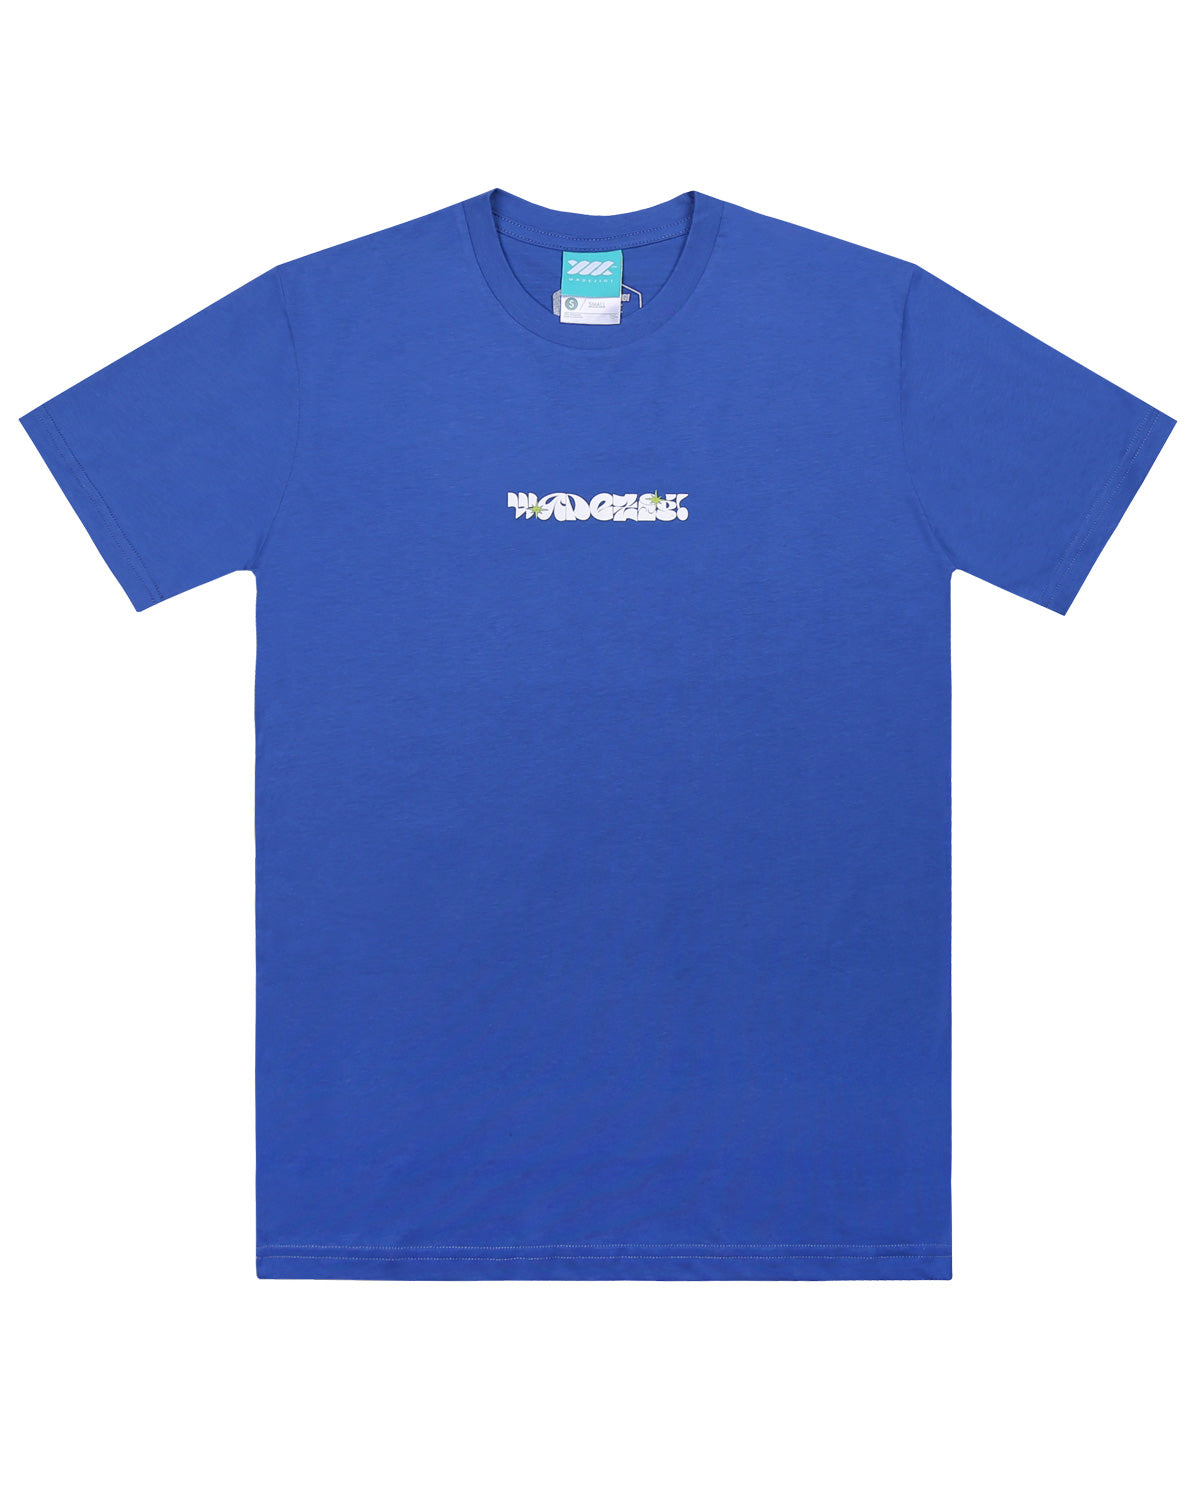 Wadezig! T-Shirt - Equality Blue